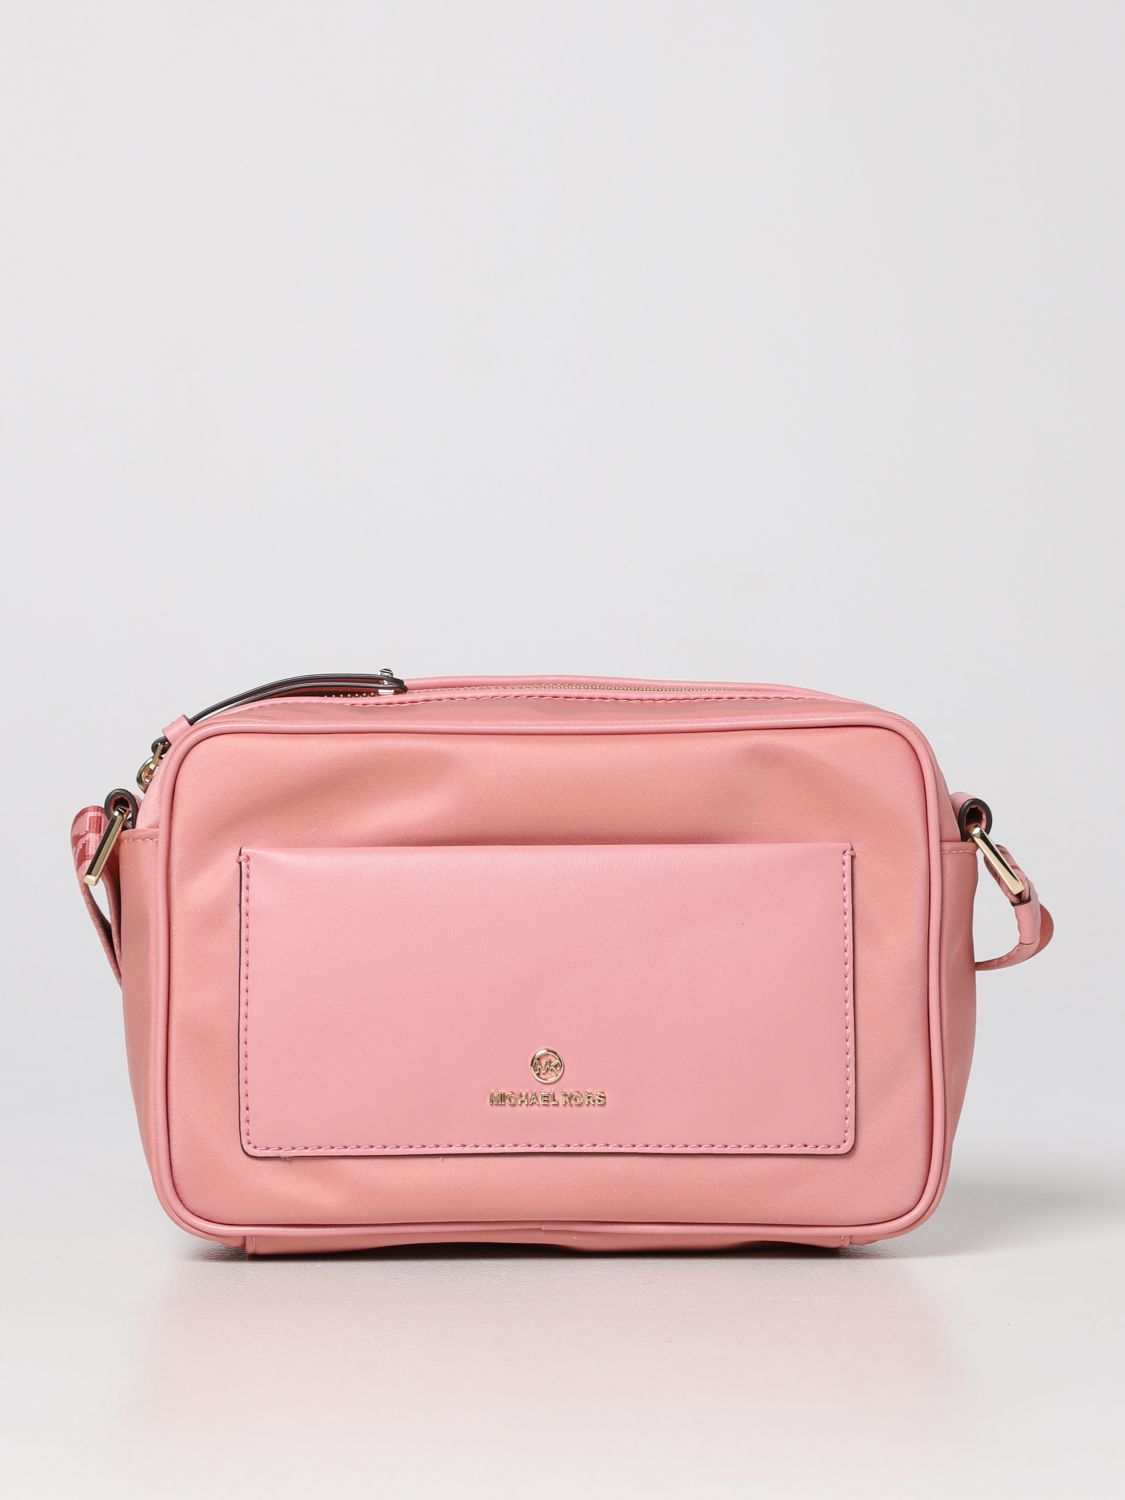 pink MICHAEL KORS Women Handbags - Vestiaire Collective